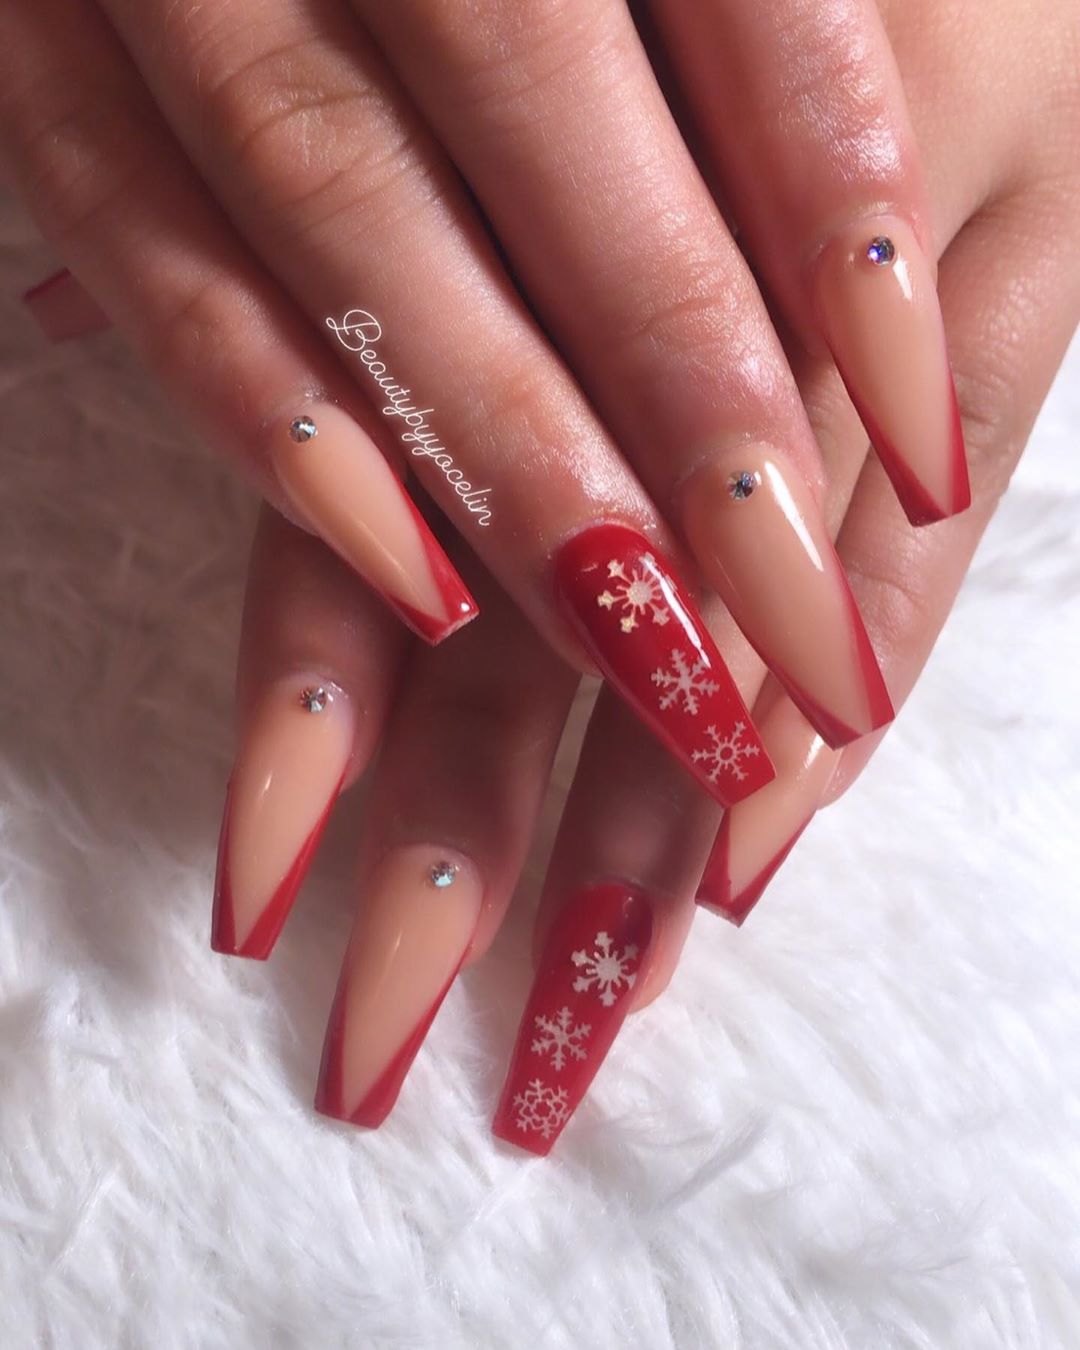 Snowflake coffin nail designs